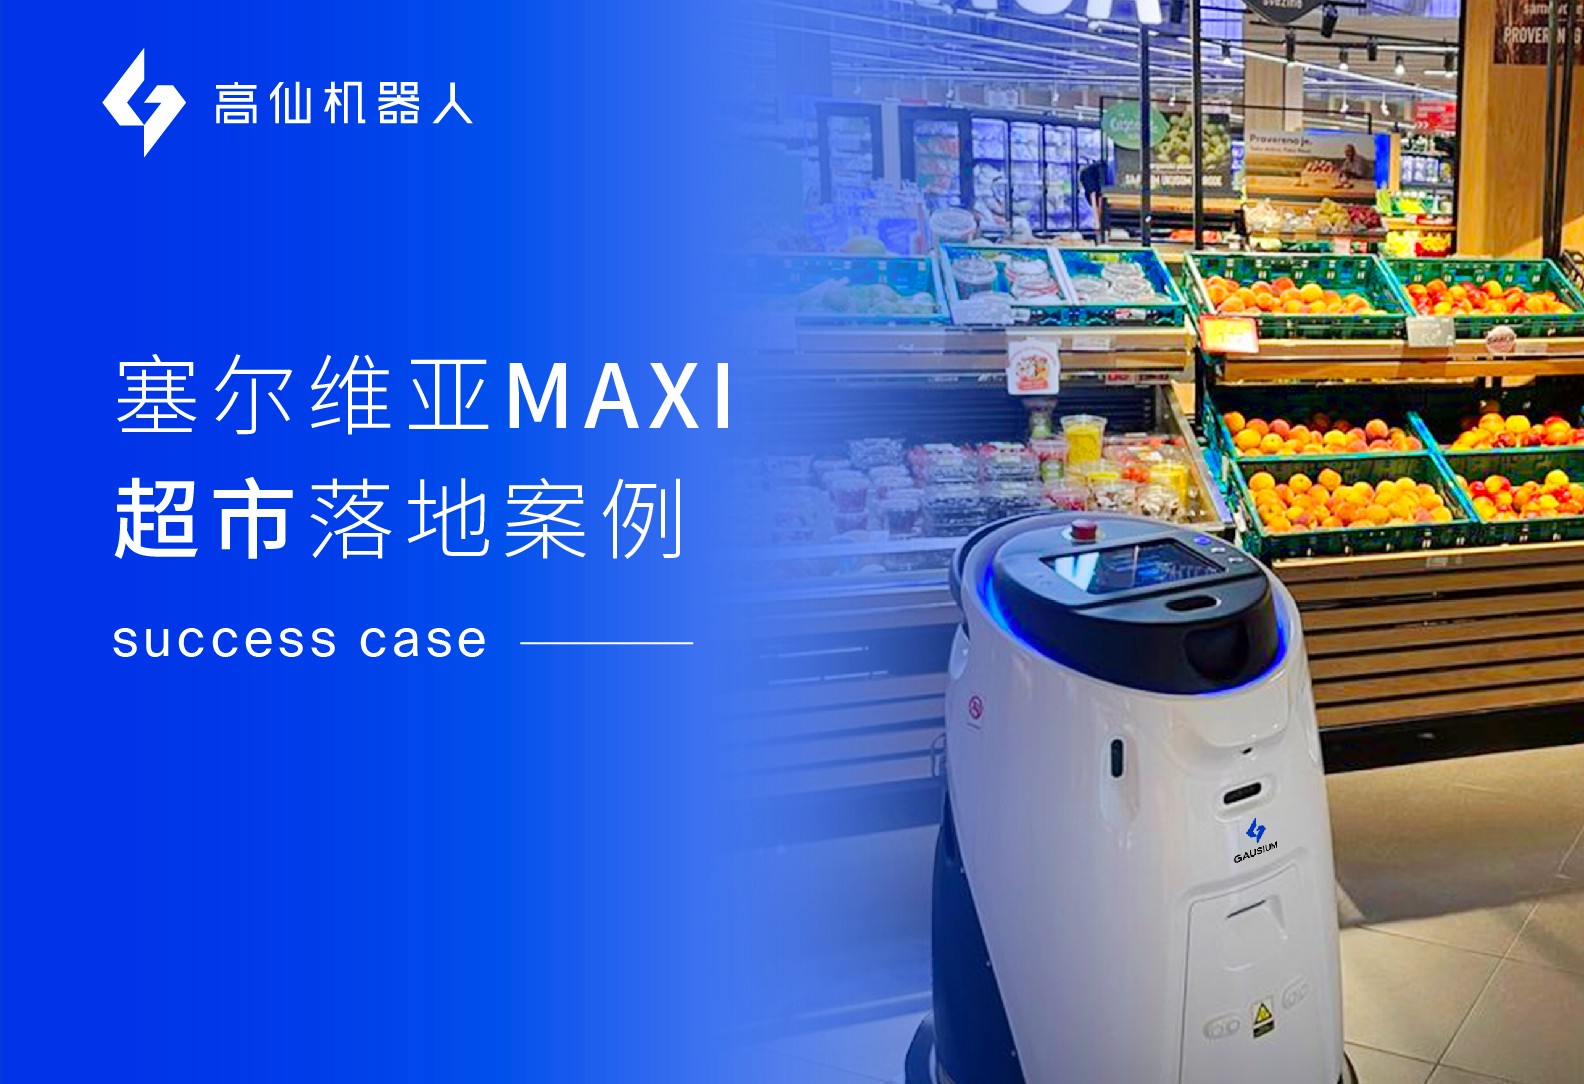 30+台高仙机器人落地塞尔维亚最大连锁超市MAXI